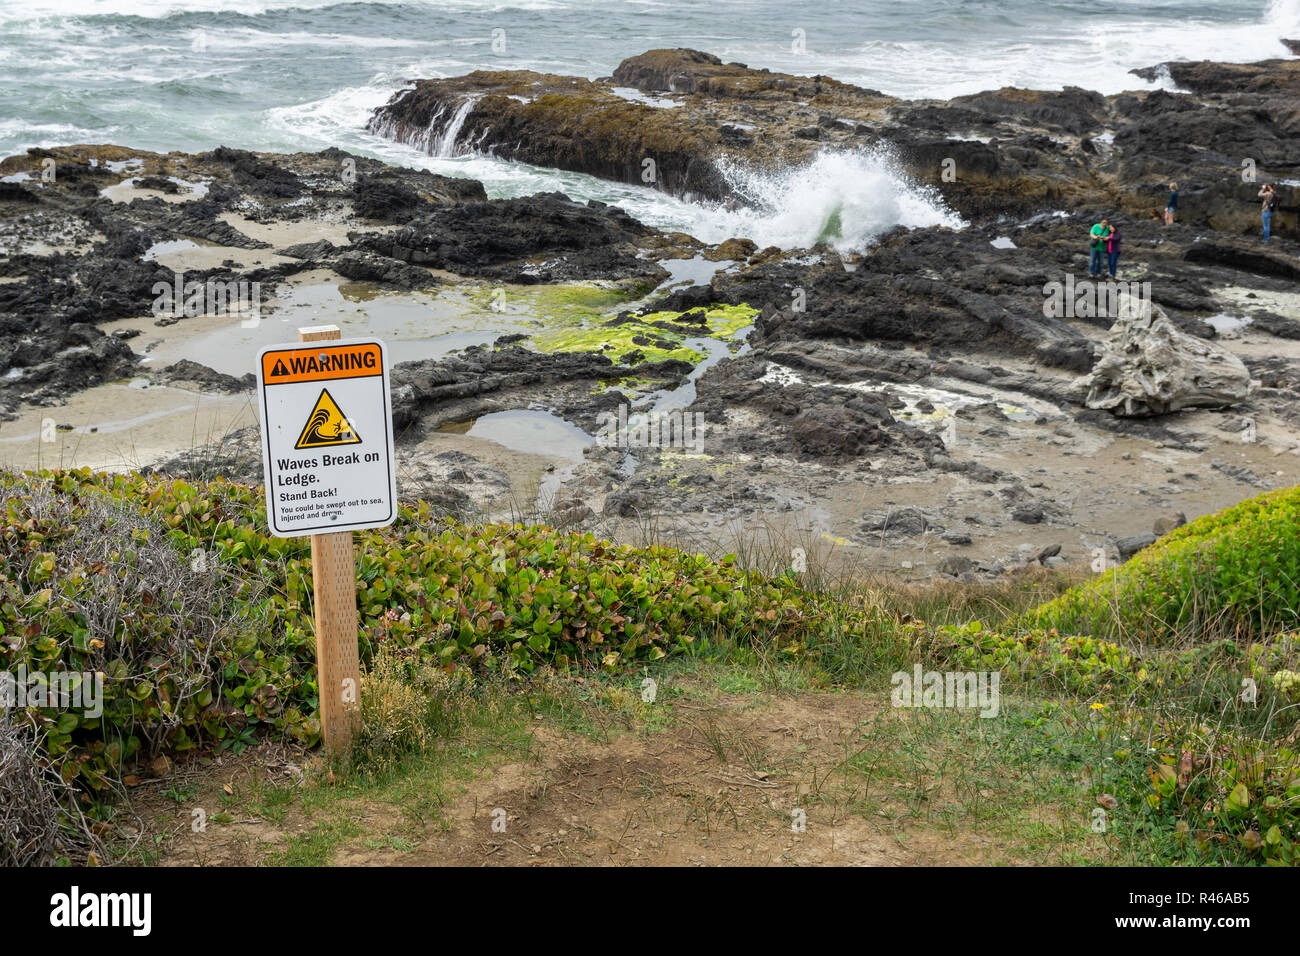 Waves break on ledge warning sign at Cape Perpertua Scenic Area, Oregon Coast, USA. Stock Photo